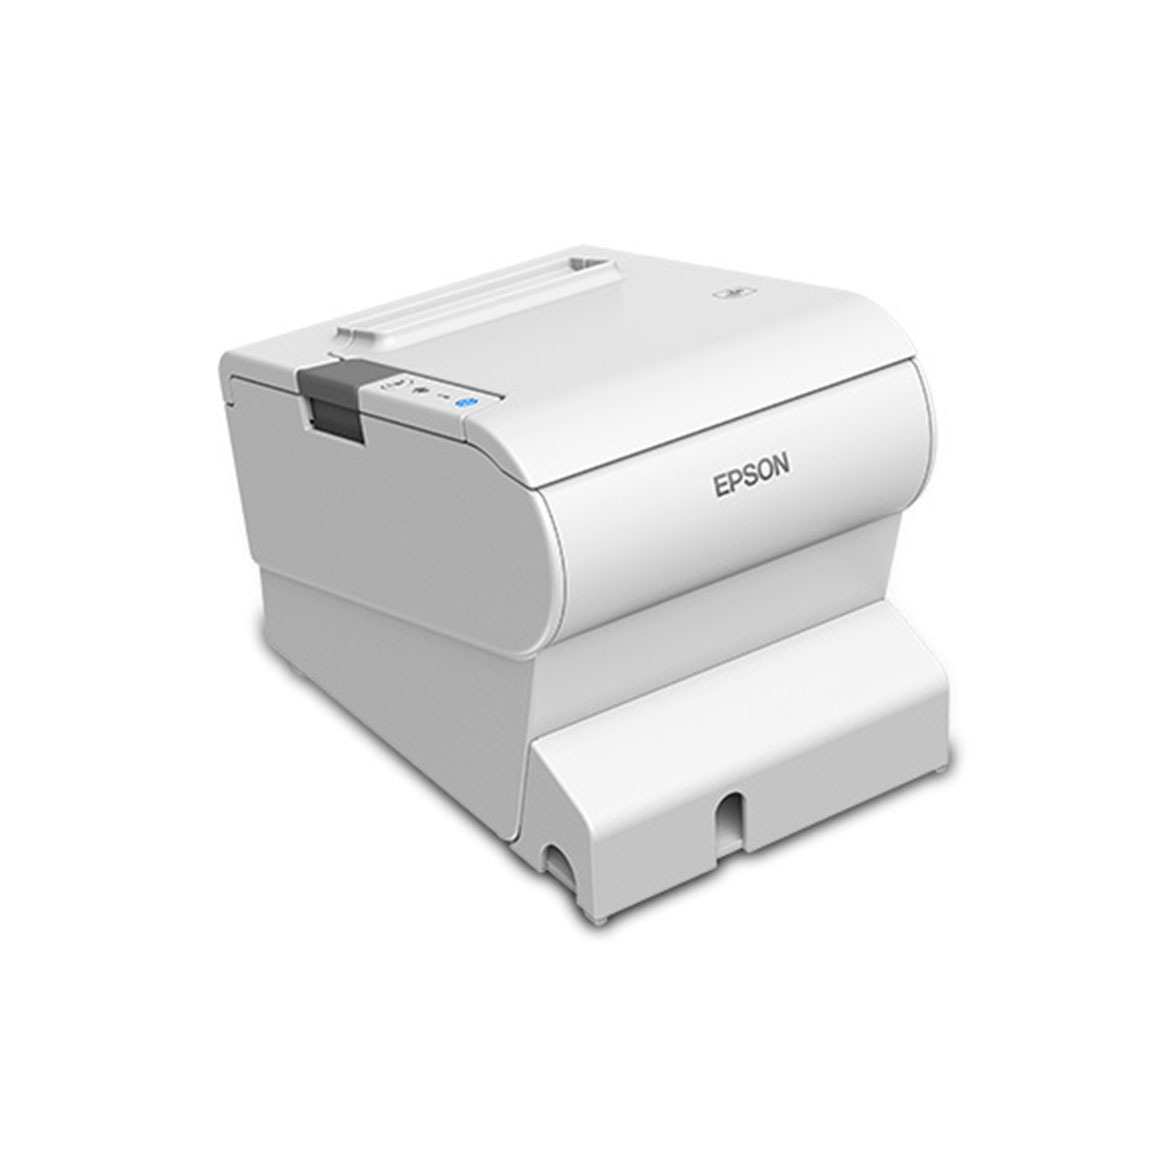 White colorEpson TM-88VI Thermal receipt printer diagonal side image